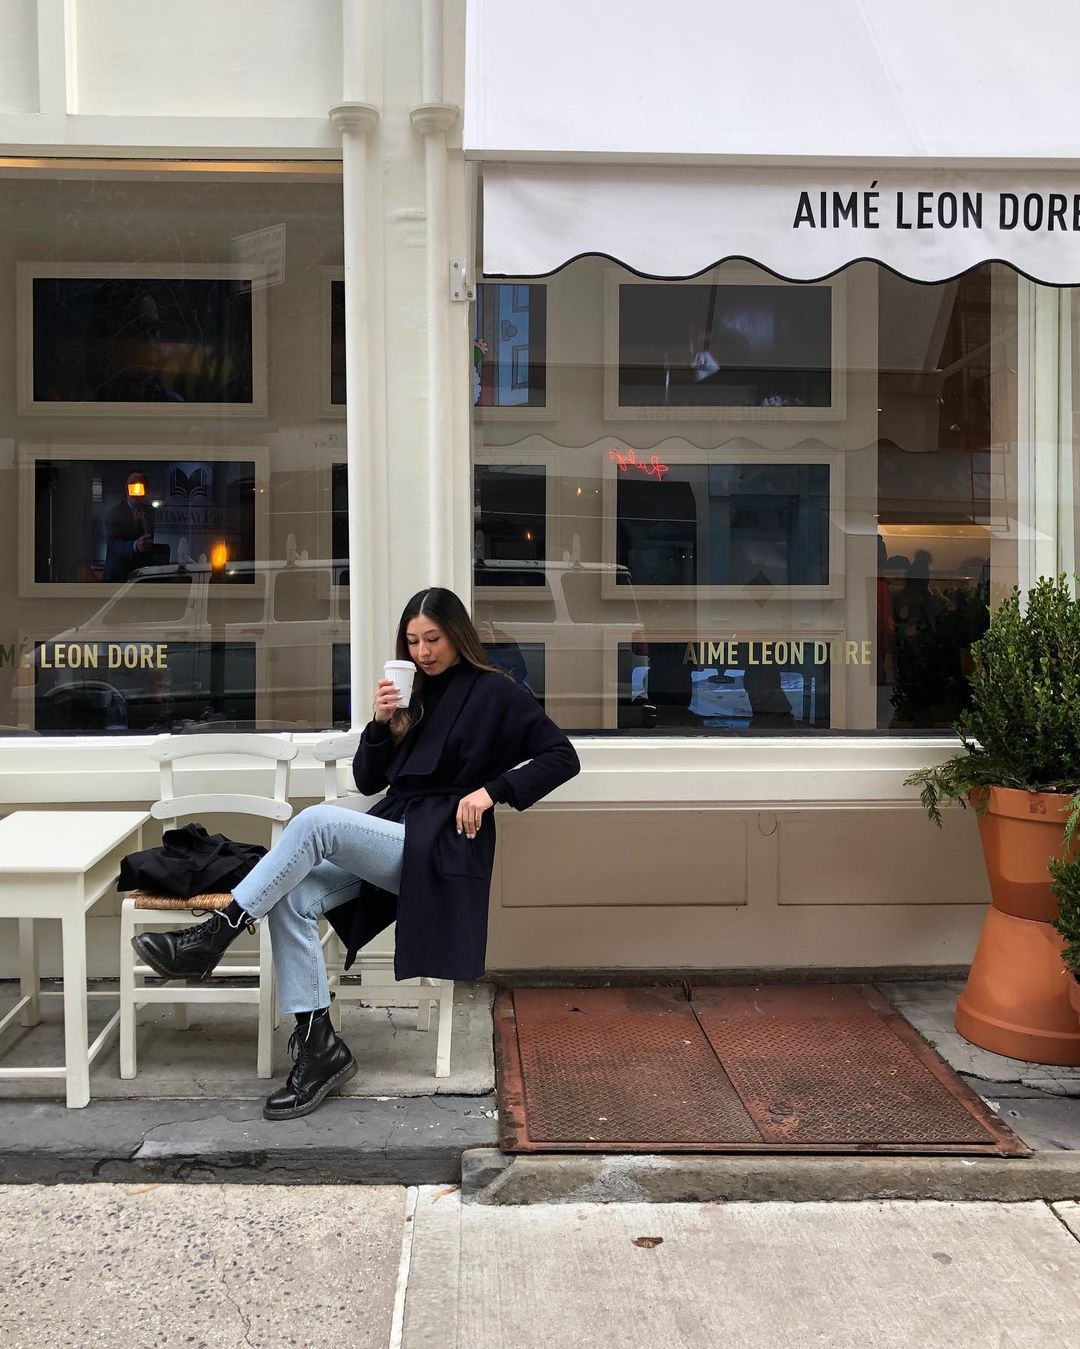 Nhãn hiệu thời trang đường phố sang trọng - Aimé Leon Dore - cũng bắt kịp xu hướng lấn sân sang địa hạt F&amp;B với Café Leon Dore. Ảnh: @yzelleduran.